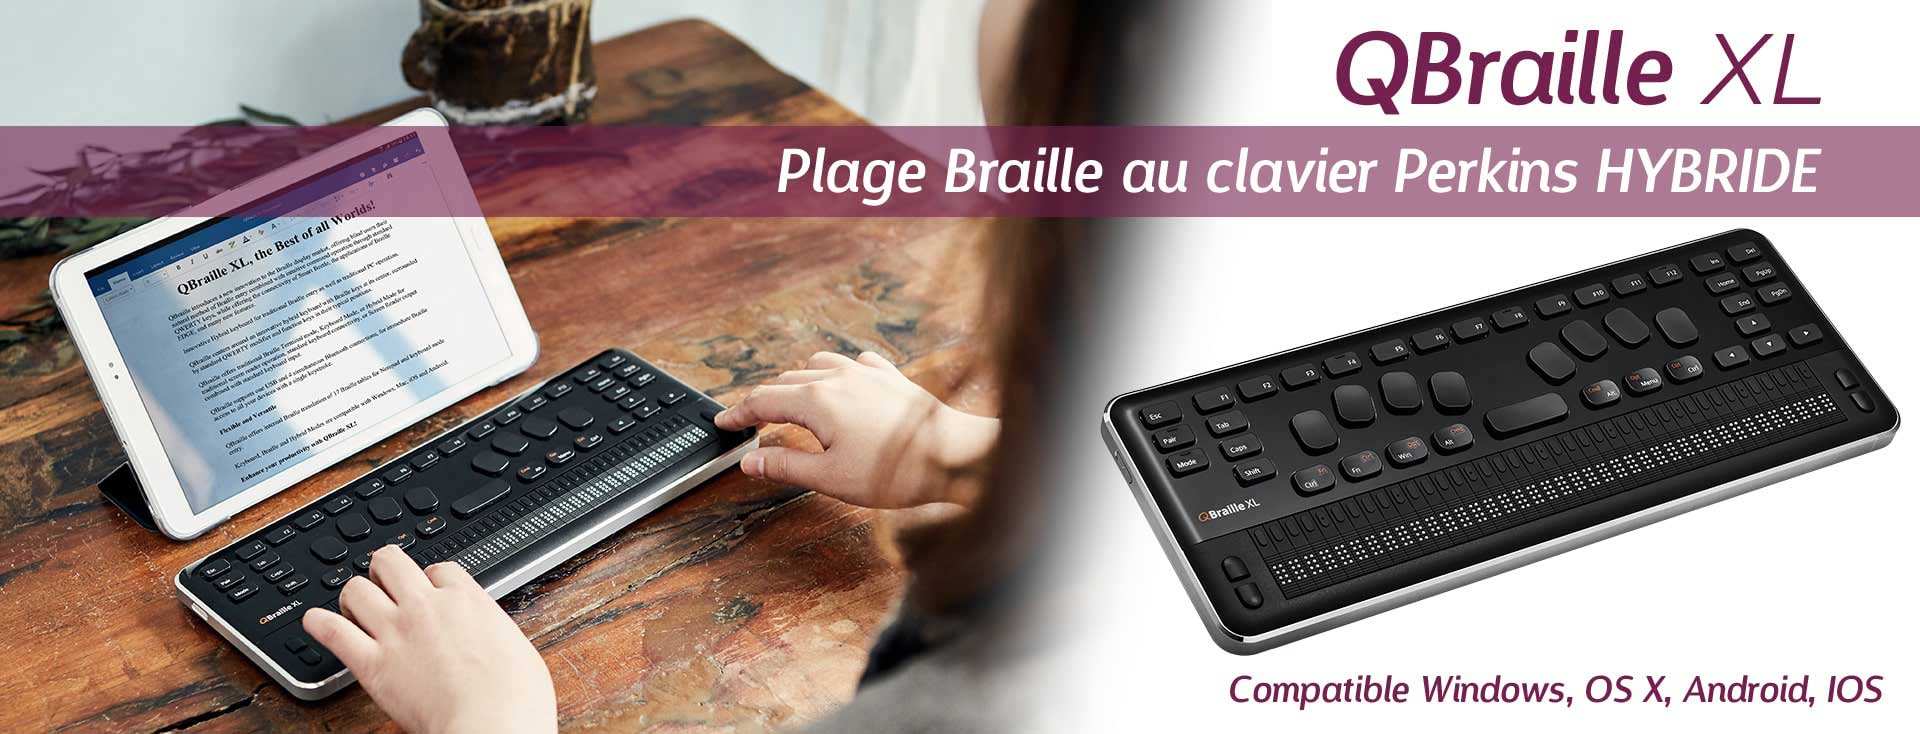 Qbraille XL, plage Braille au clavier hybride